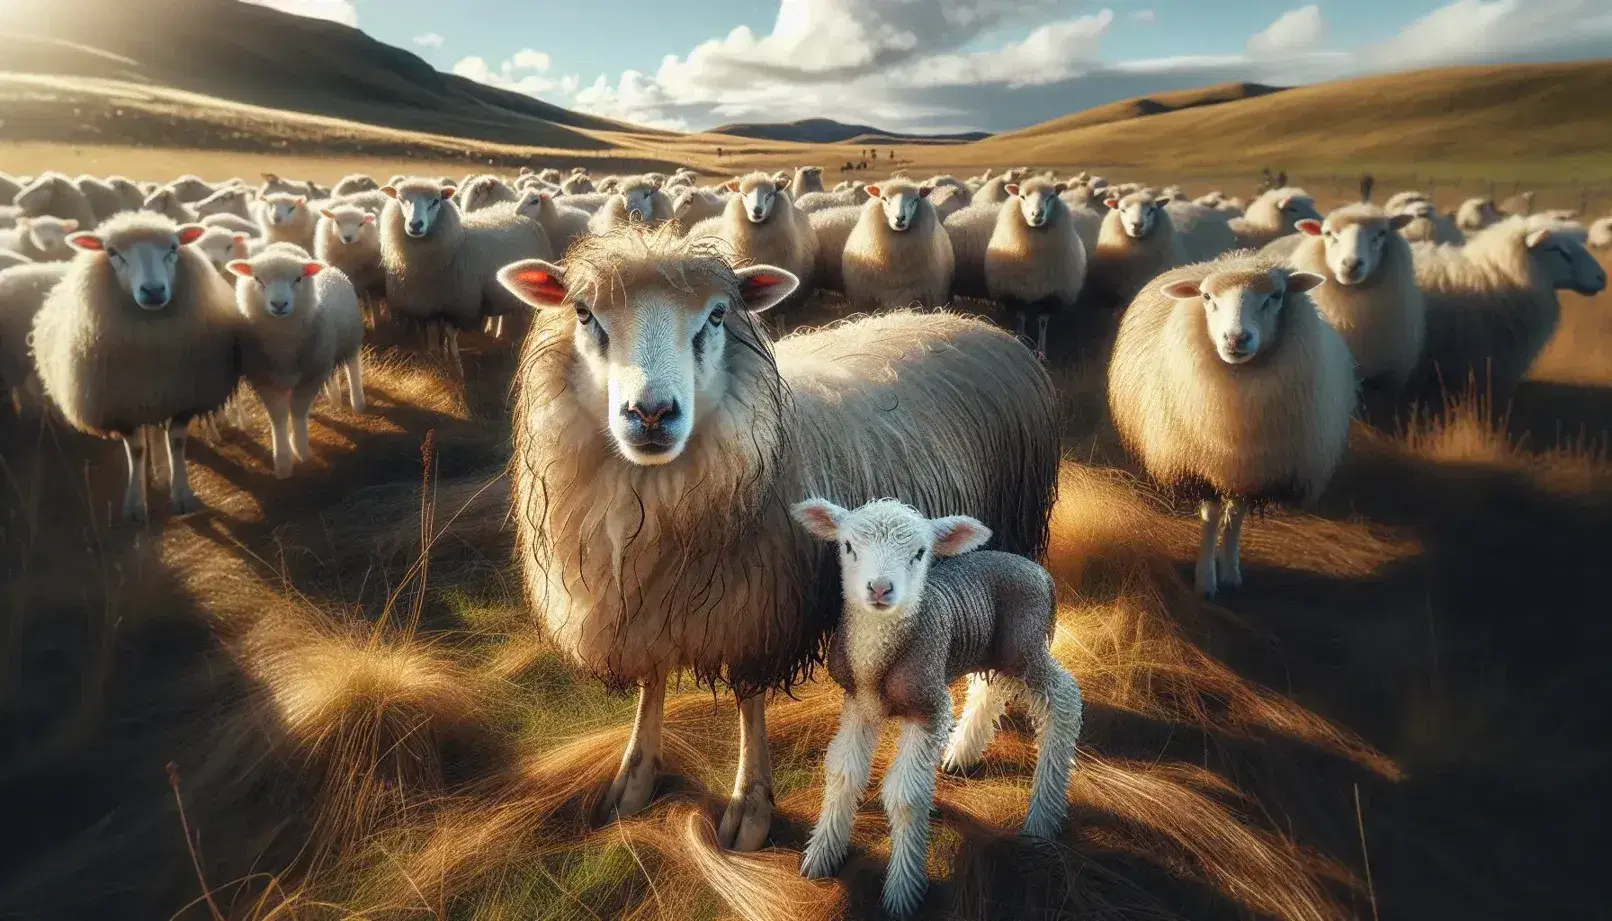 Rebaño de ovejas en campo abierto con cordero recién nacido junto a su madre, rodeados de pasto verde y colina al fondo bajo cielo azul.